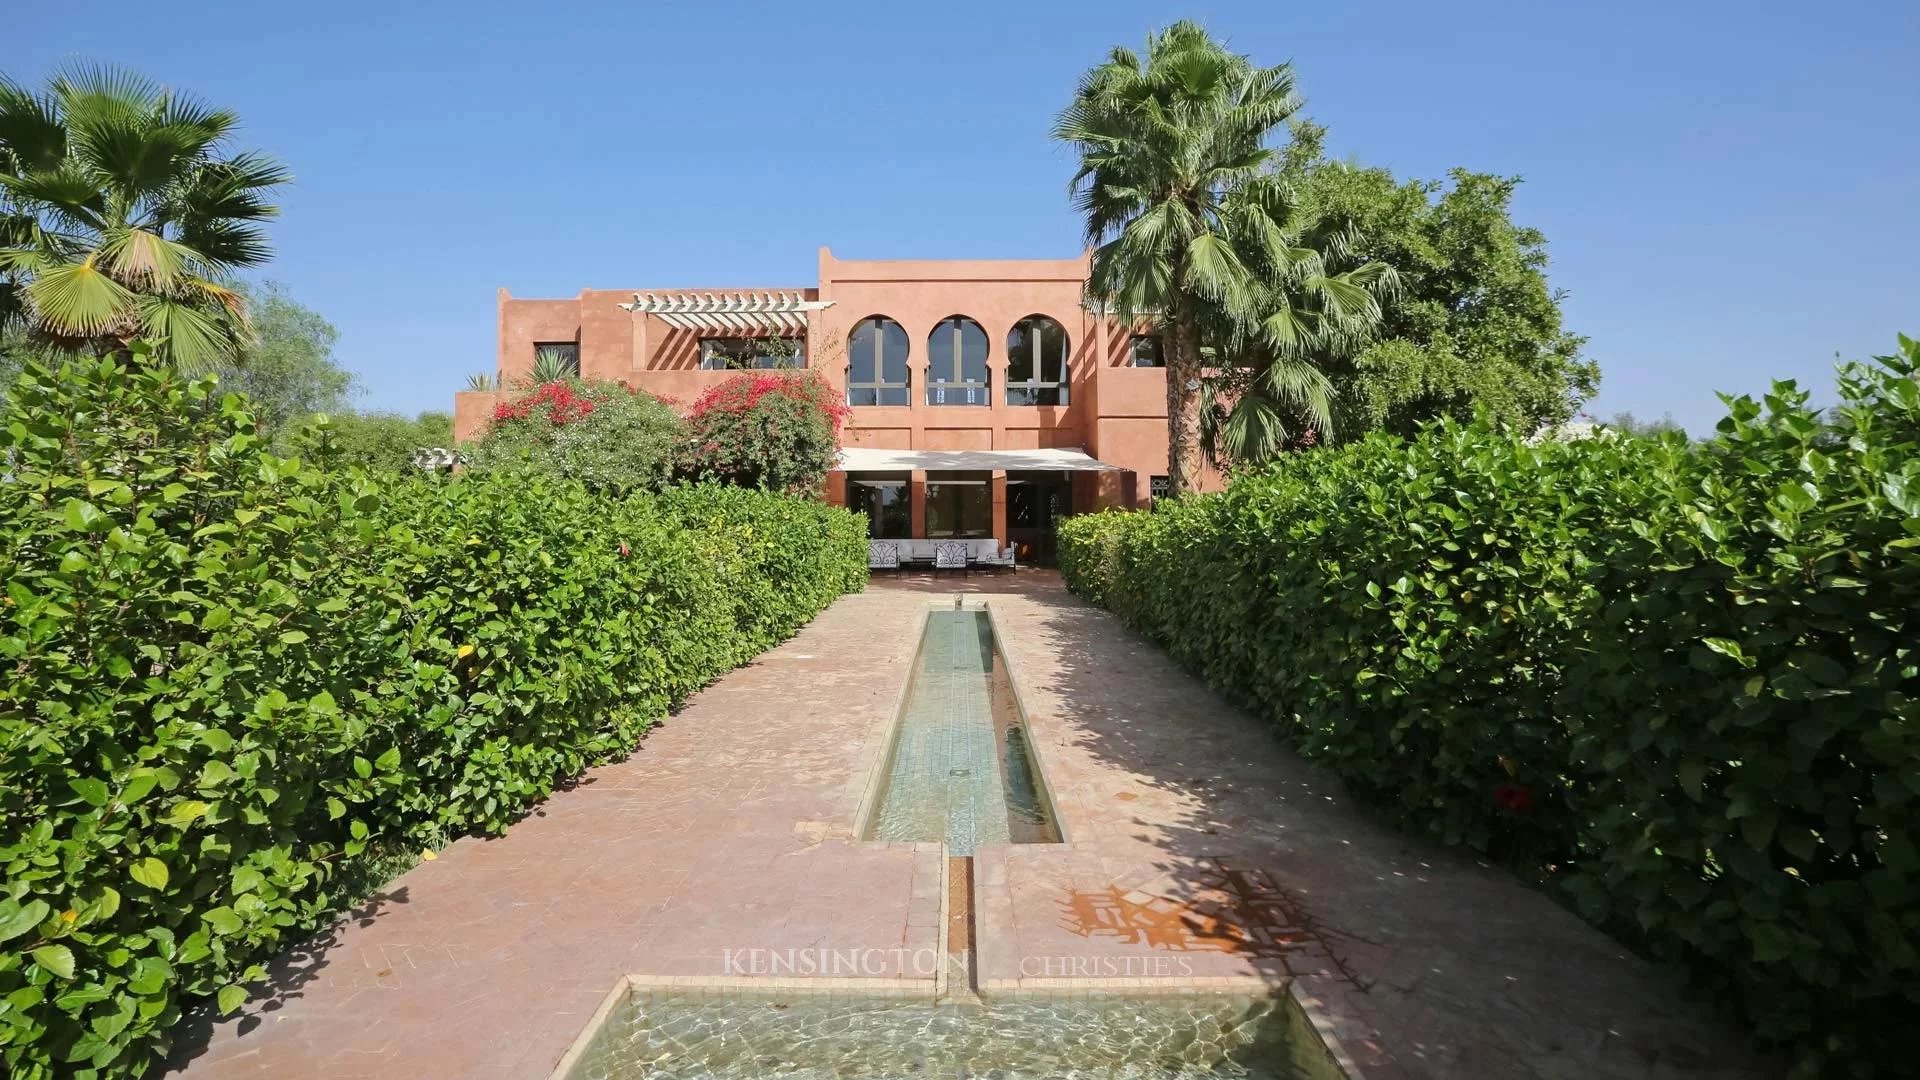 Domaine Jibal in Marrakech, Morocco